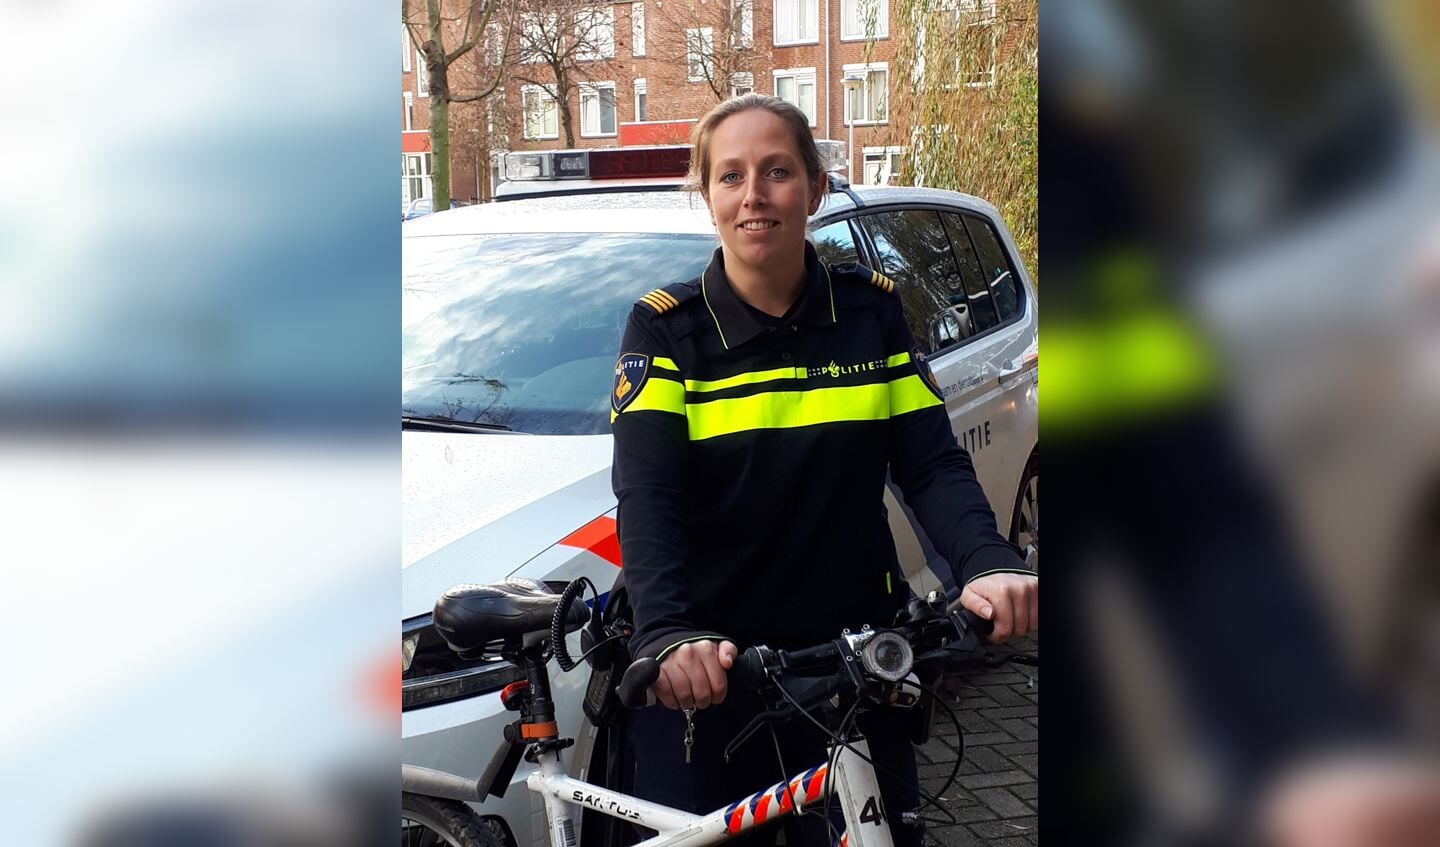 Wijkagent Molenaar: "Bel de politie als je het niet vertrouwt". | Foto: PR